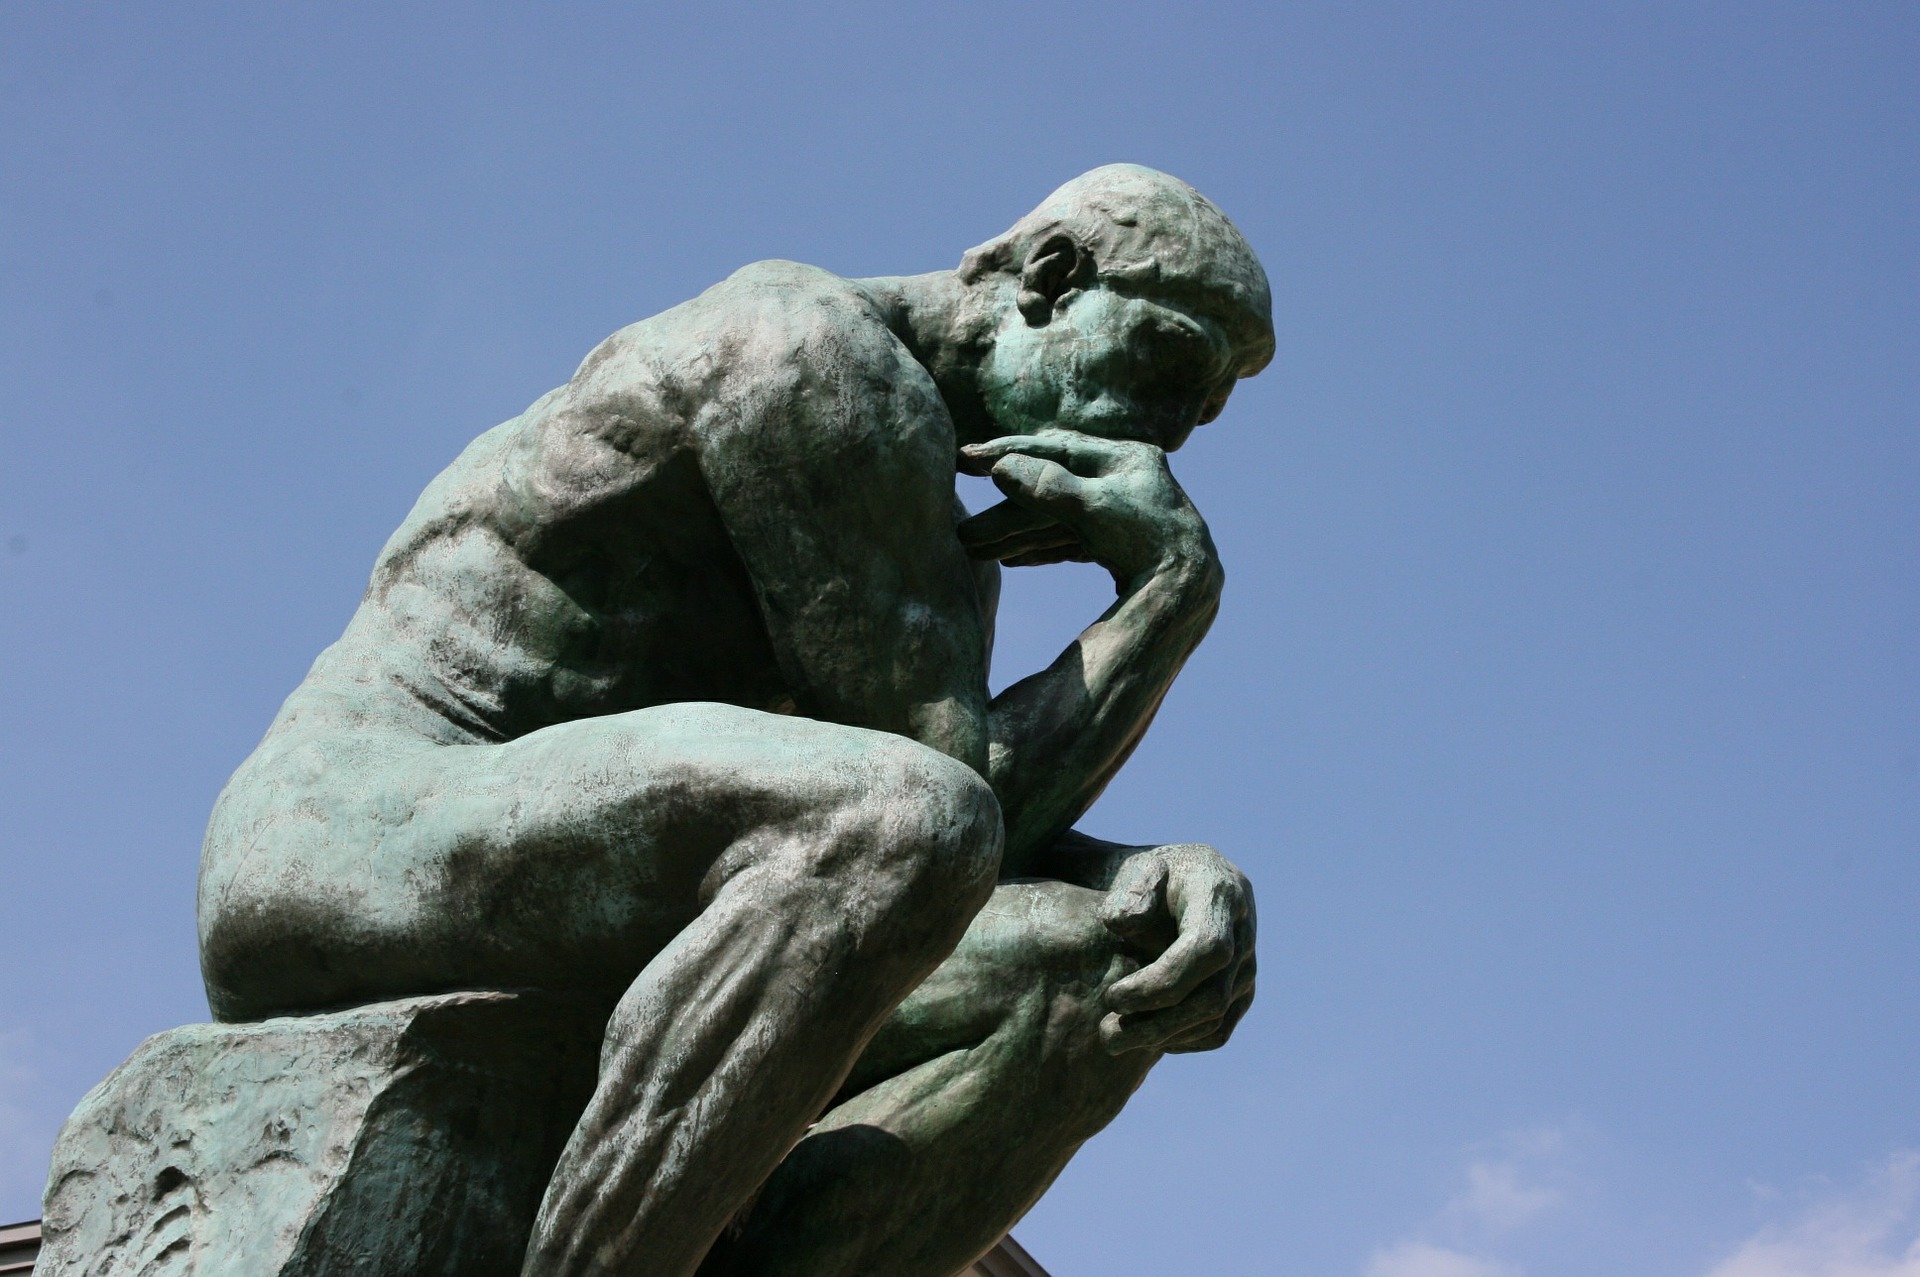 La escultura del Pensador de Rodin. Aprenda más sobre la argumentación y el pensamiento crítico.